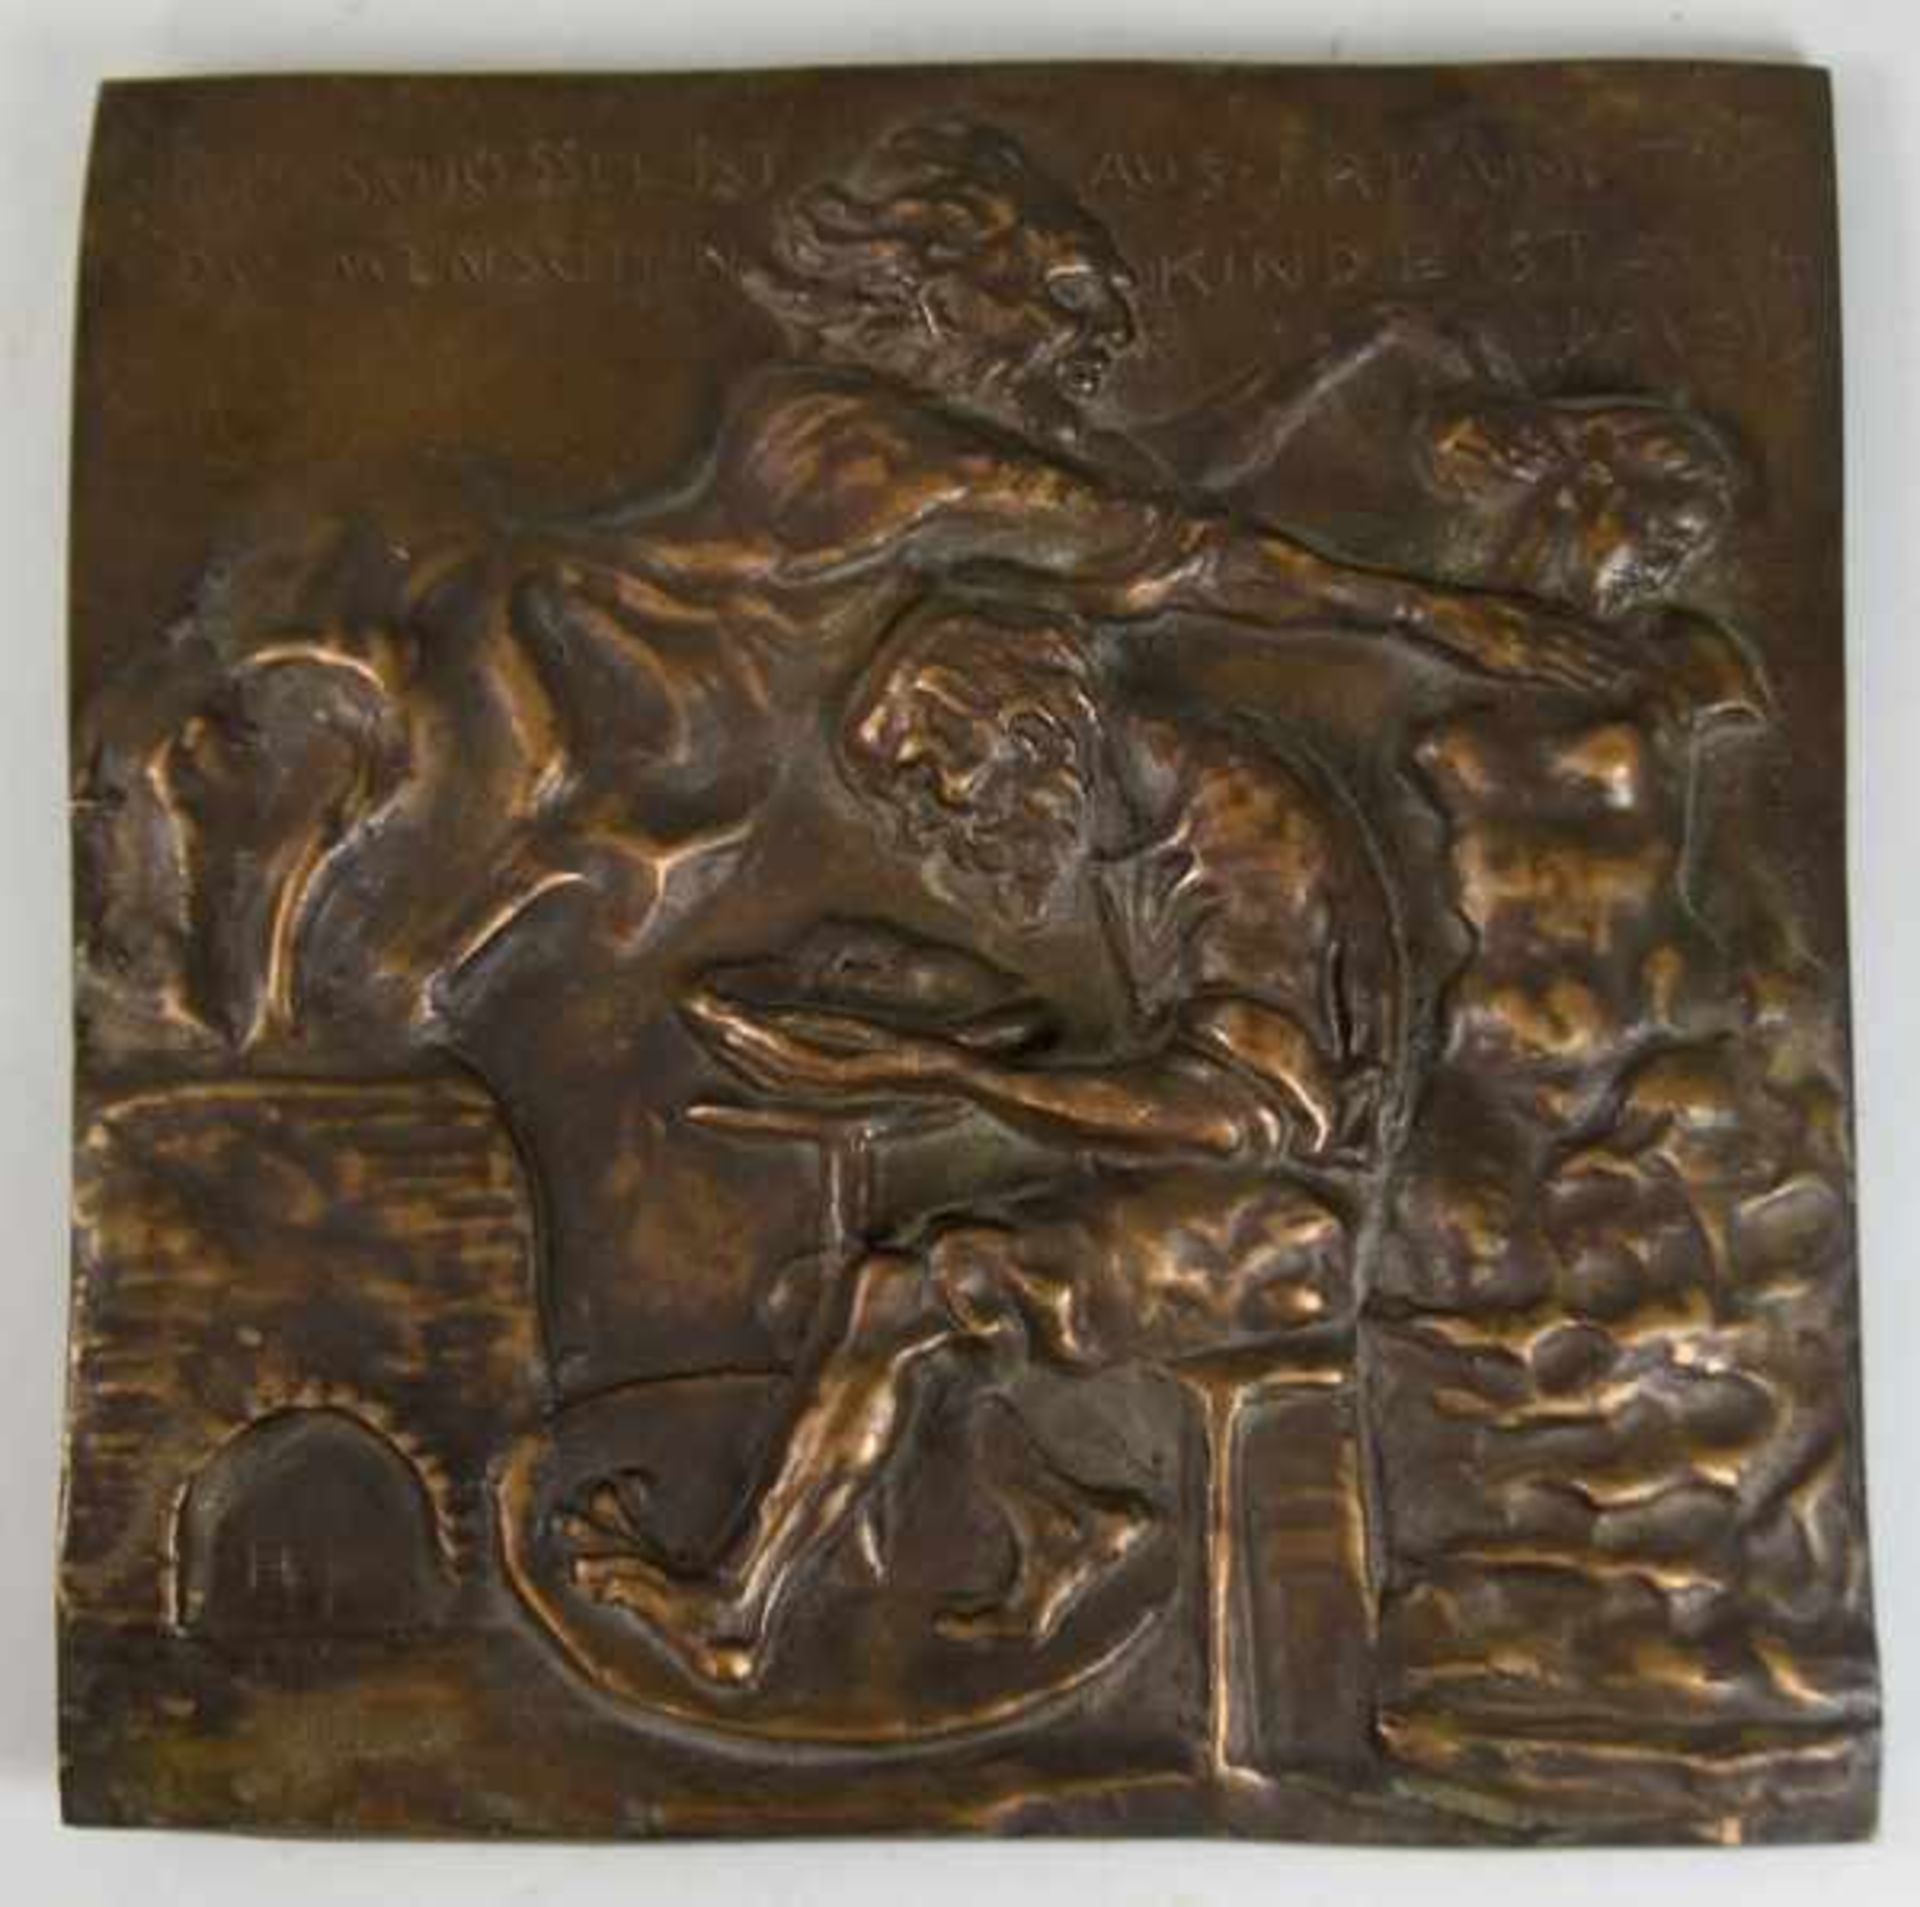 THORAK Josef (1889 Salzburg - 1952 Bad Endorf) "Töpfer", Bronzerelief mit Inschrift, signiert "TH"